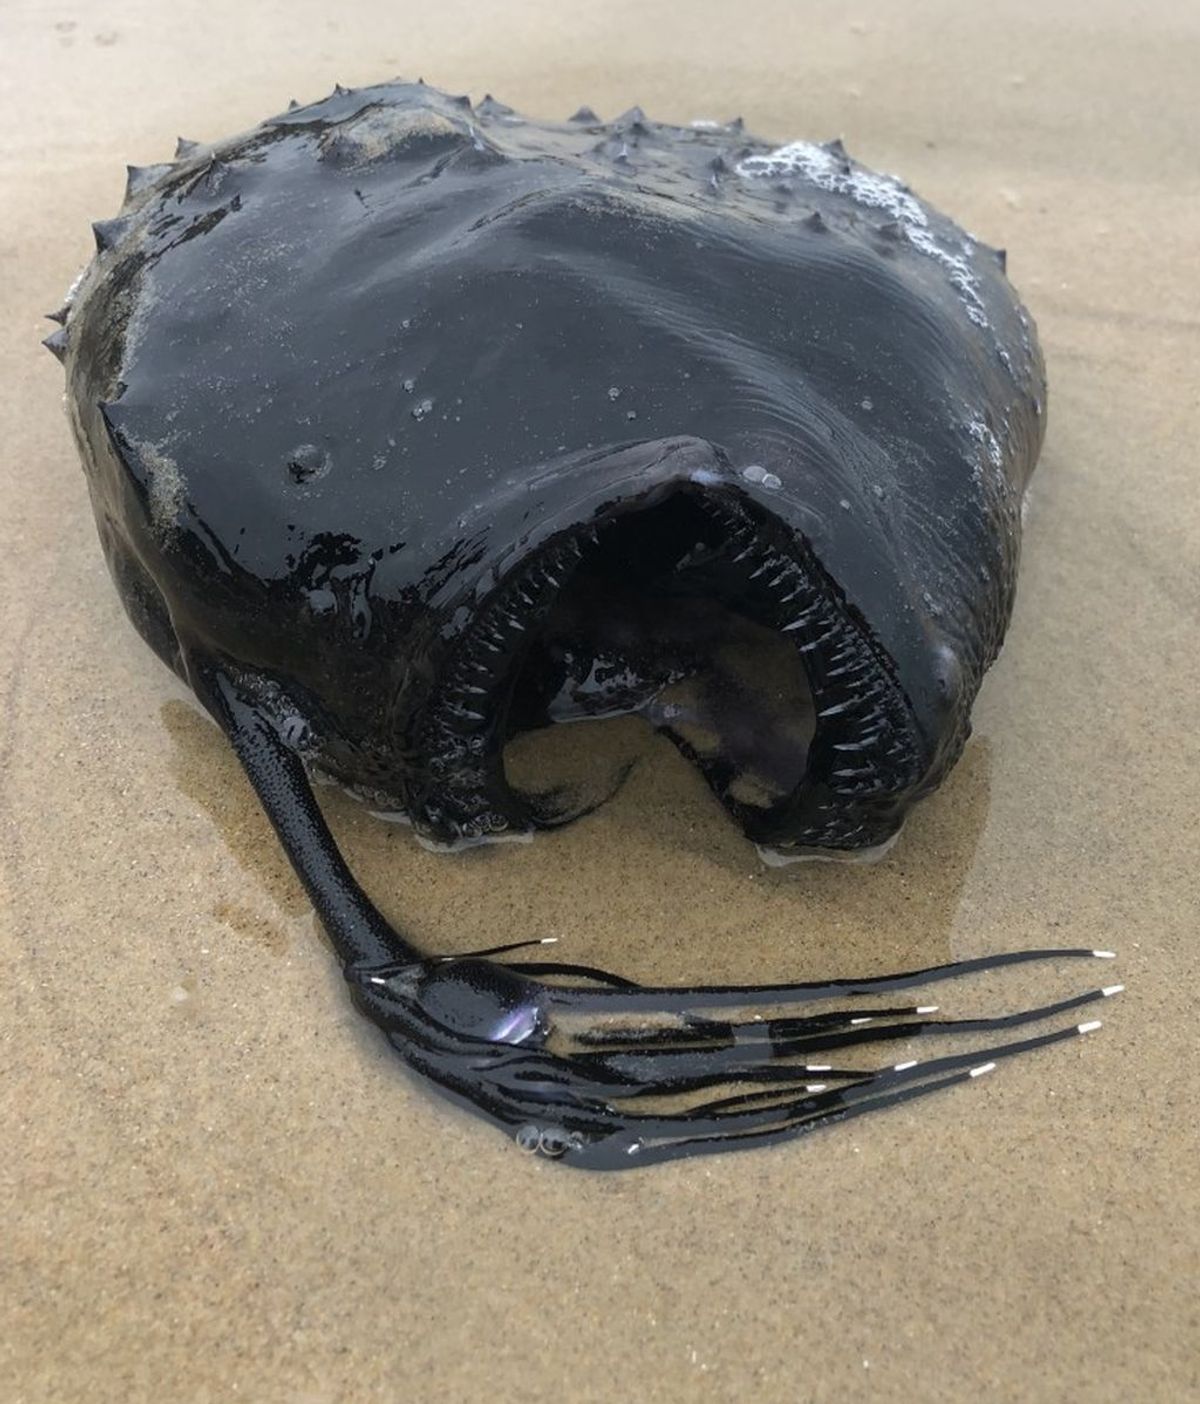 Un pez extremadamente negro de aguas profundas aparece muerto en la costa de California